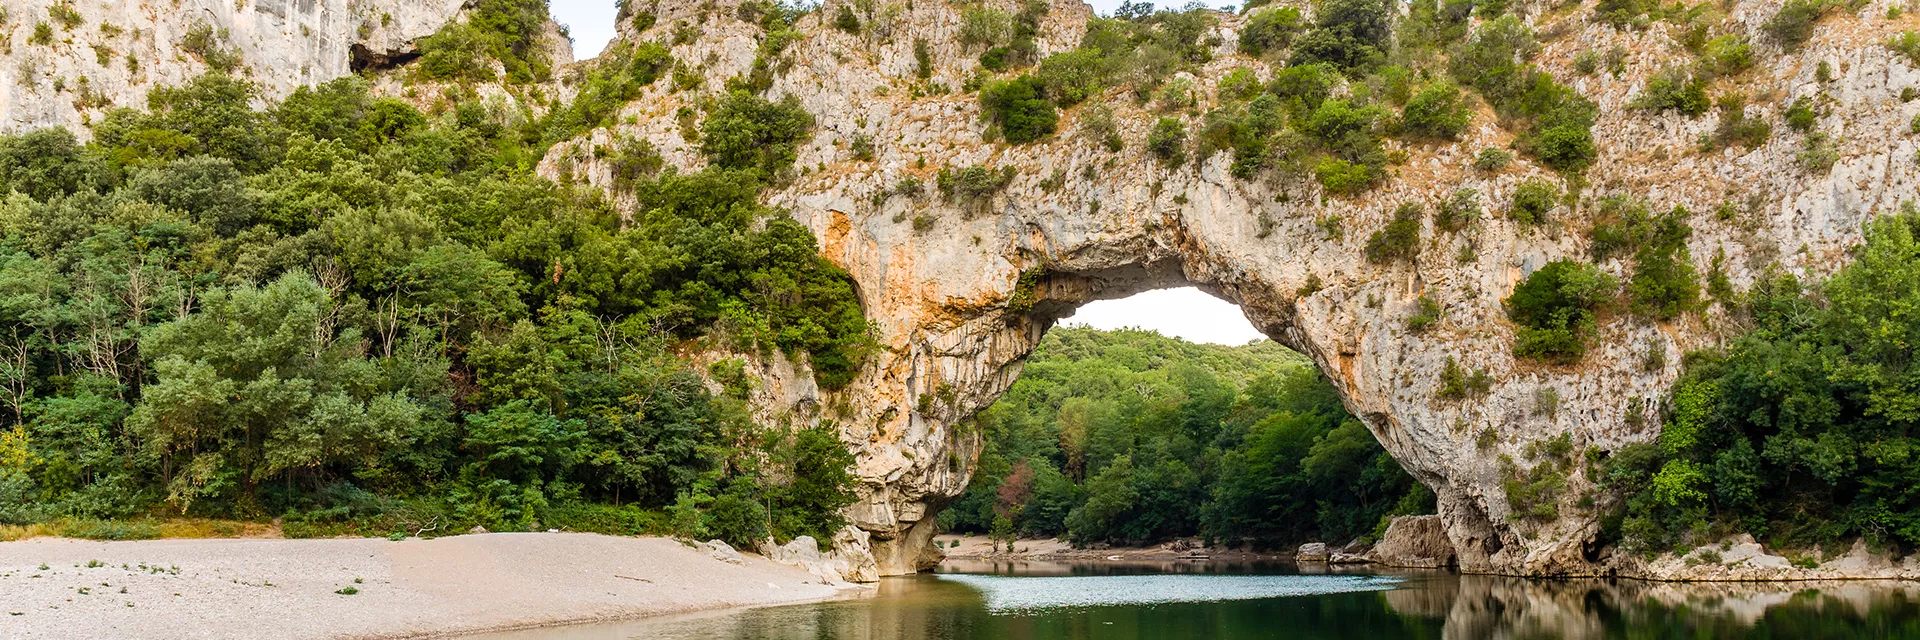 Location de vacances en Ardèche